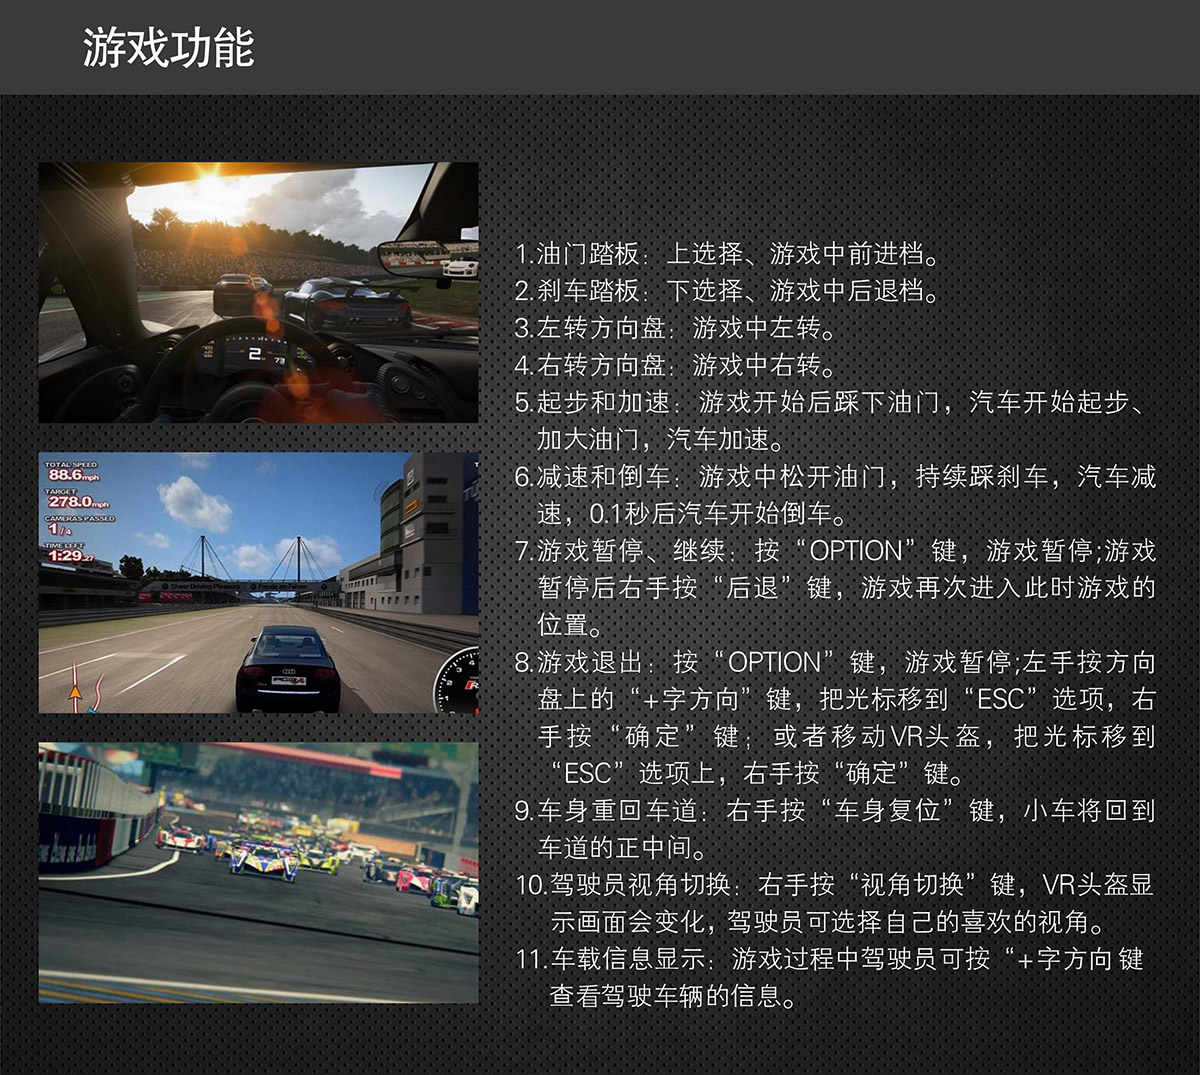 模拟体验虚拟飞行赛车游戏功能.jpg